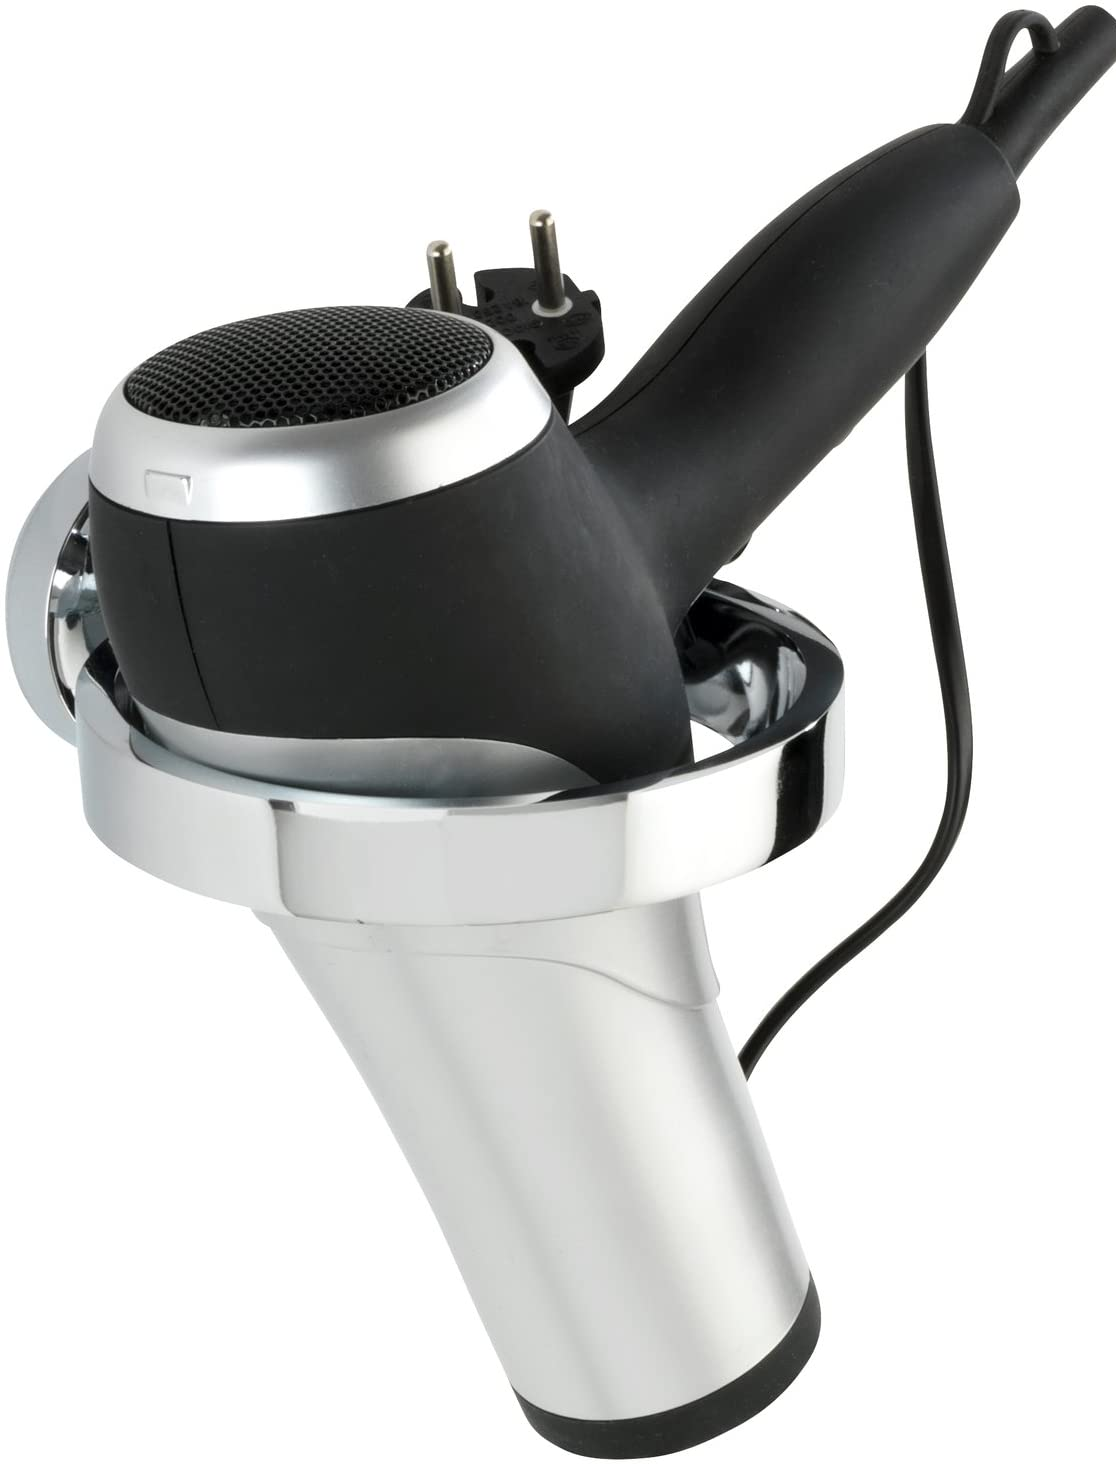 Power-Loc® Haartrocknerhalter Arcole - Fönhalter, Befestigen ohne bohren, Kunststoff (ABS), 13 x 5.8 x 15 cm, Chrom